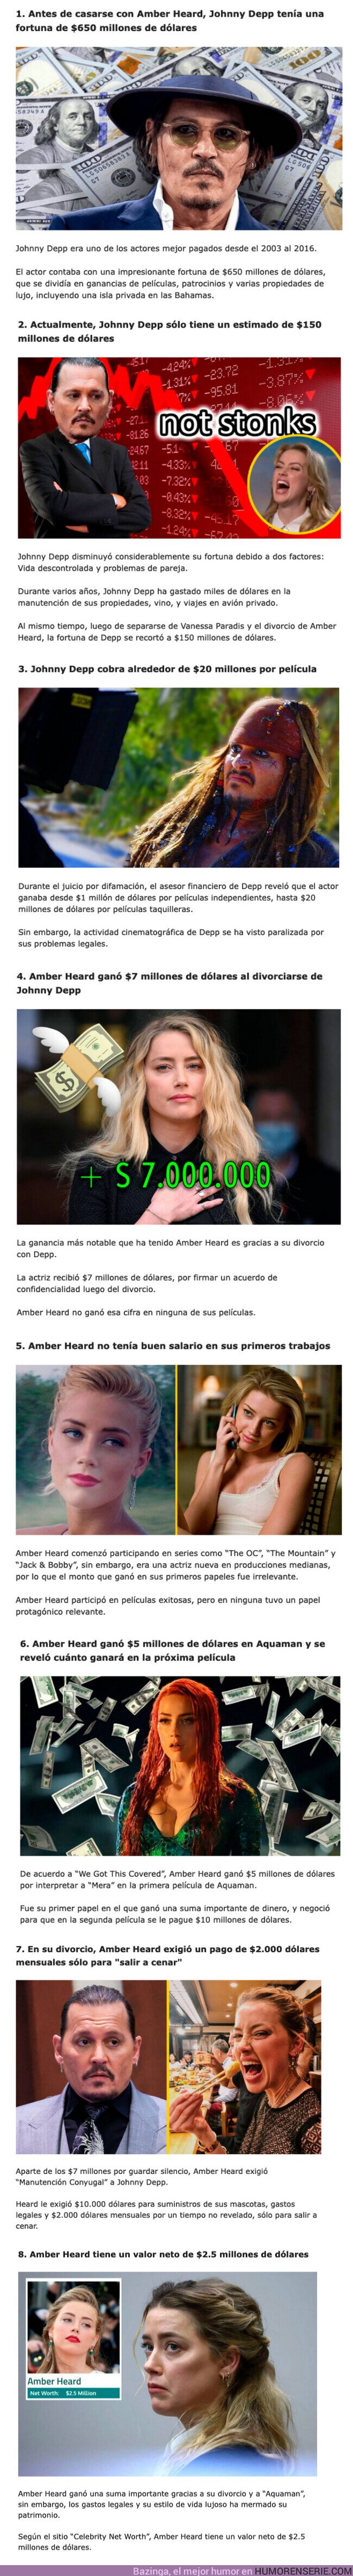 98958 - GALERÍA: 8 Puntos para entender cuánto es la fortuna de Johnny Depp vs la de Amber Heard